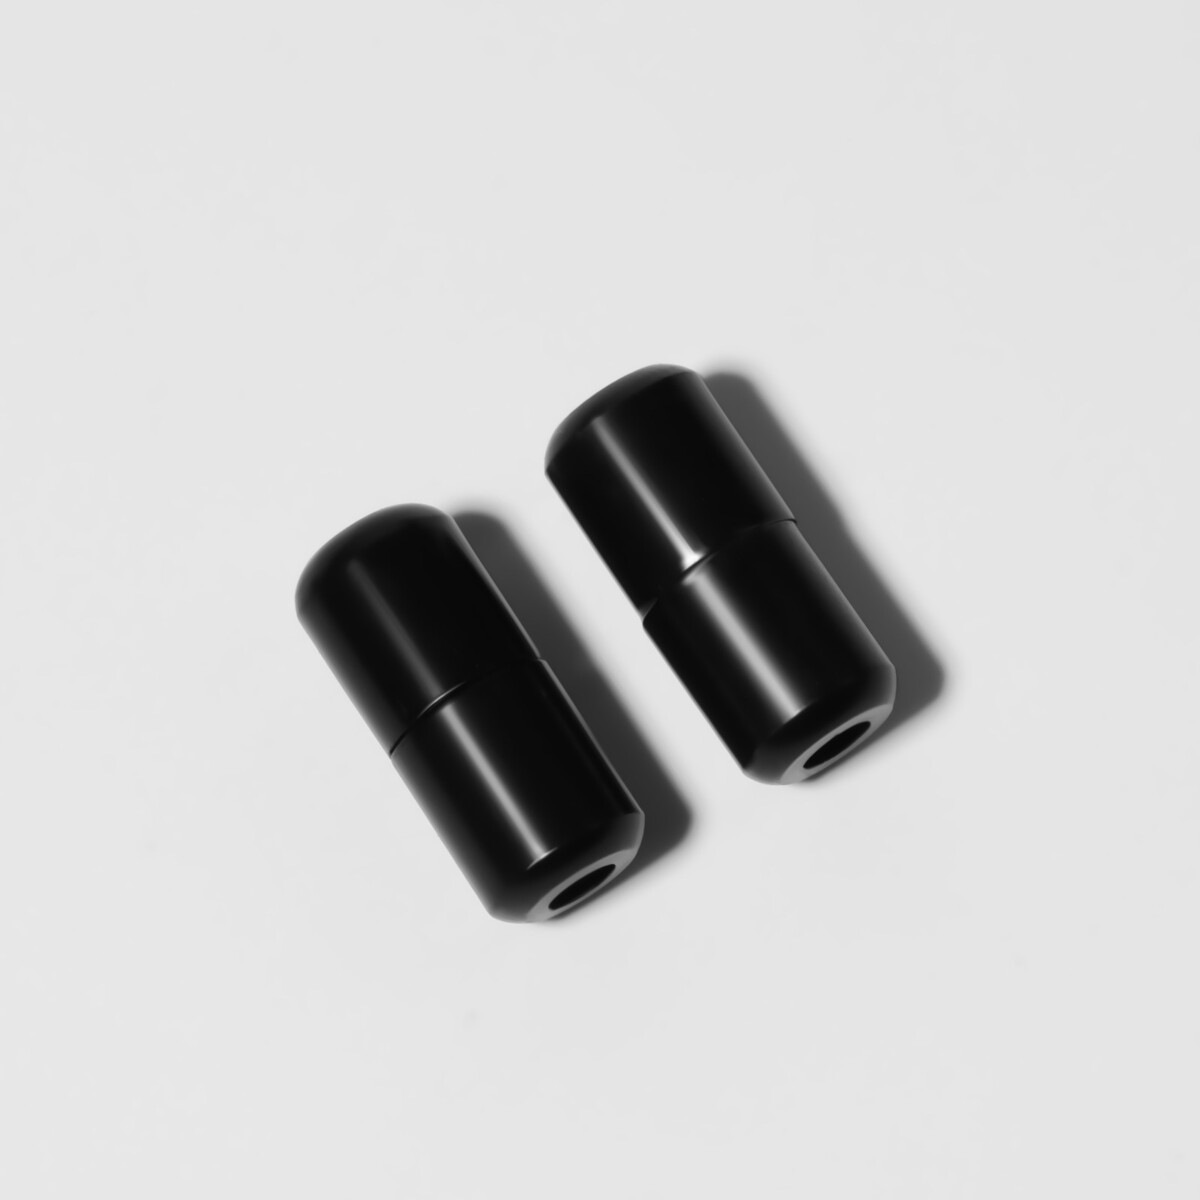 фото Фиксатор для шнурков, пара, d = 8 мм, 1,8 см, цвет черный onlitop